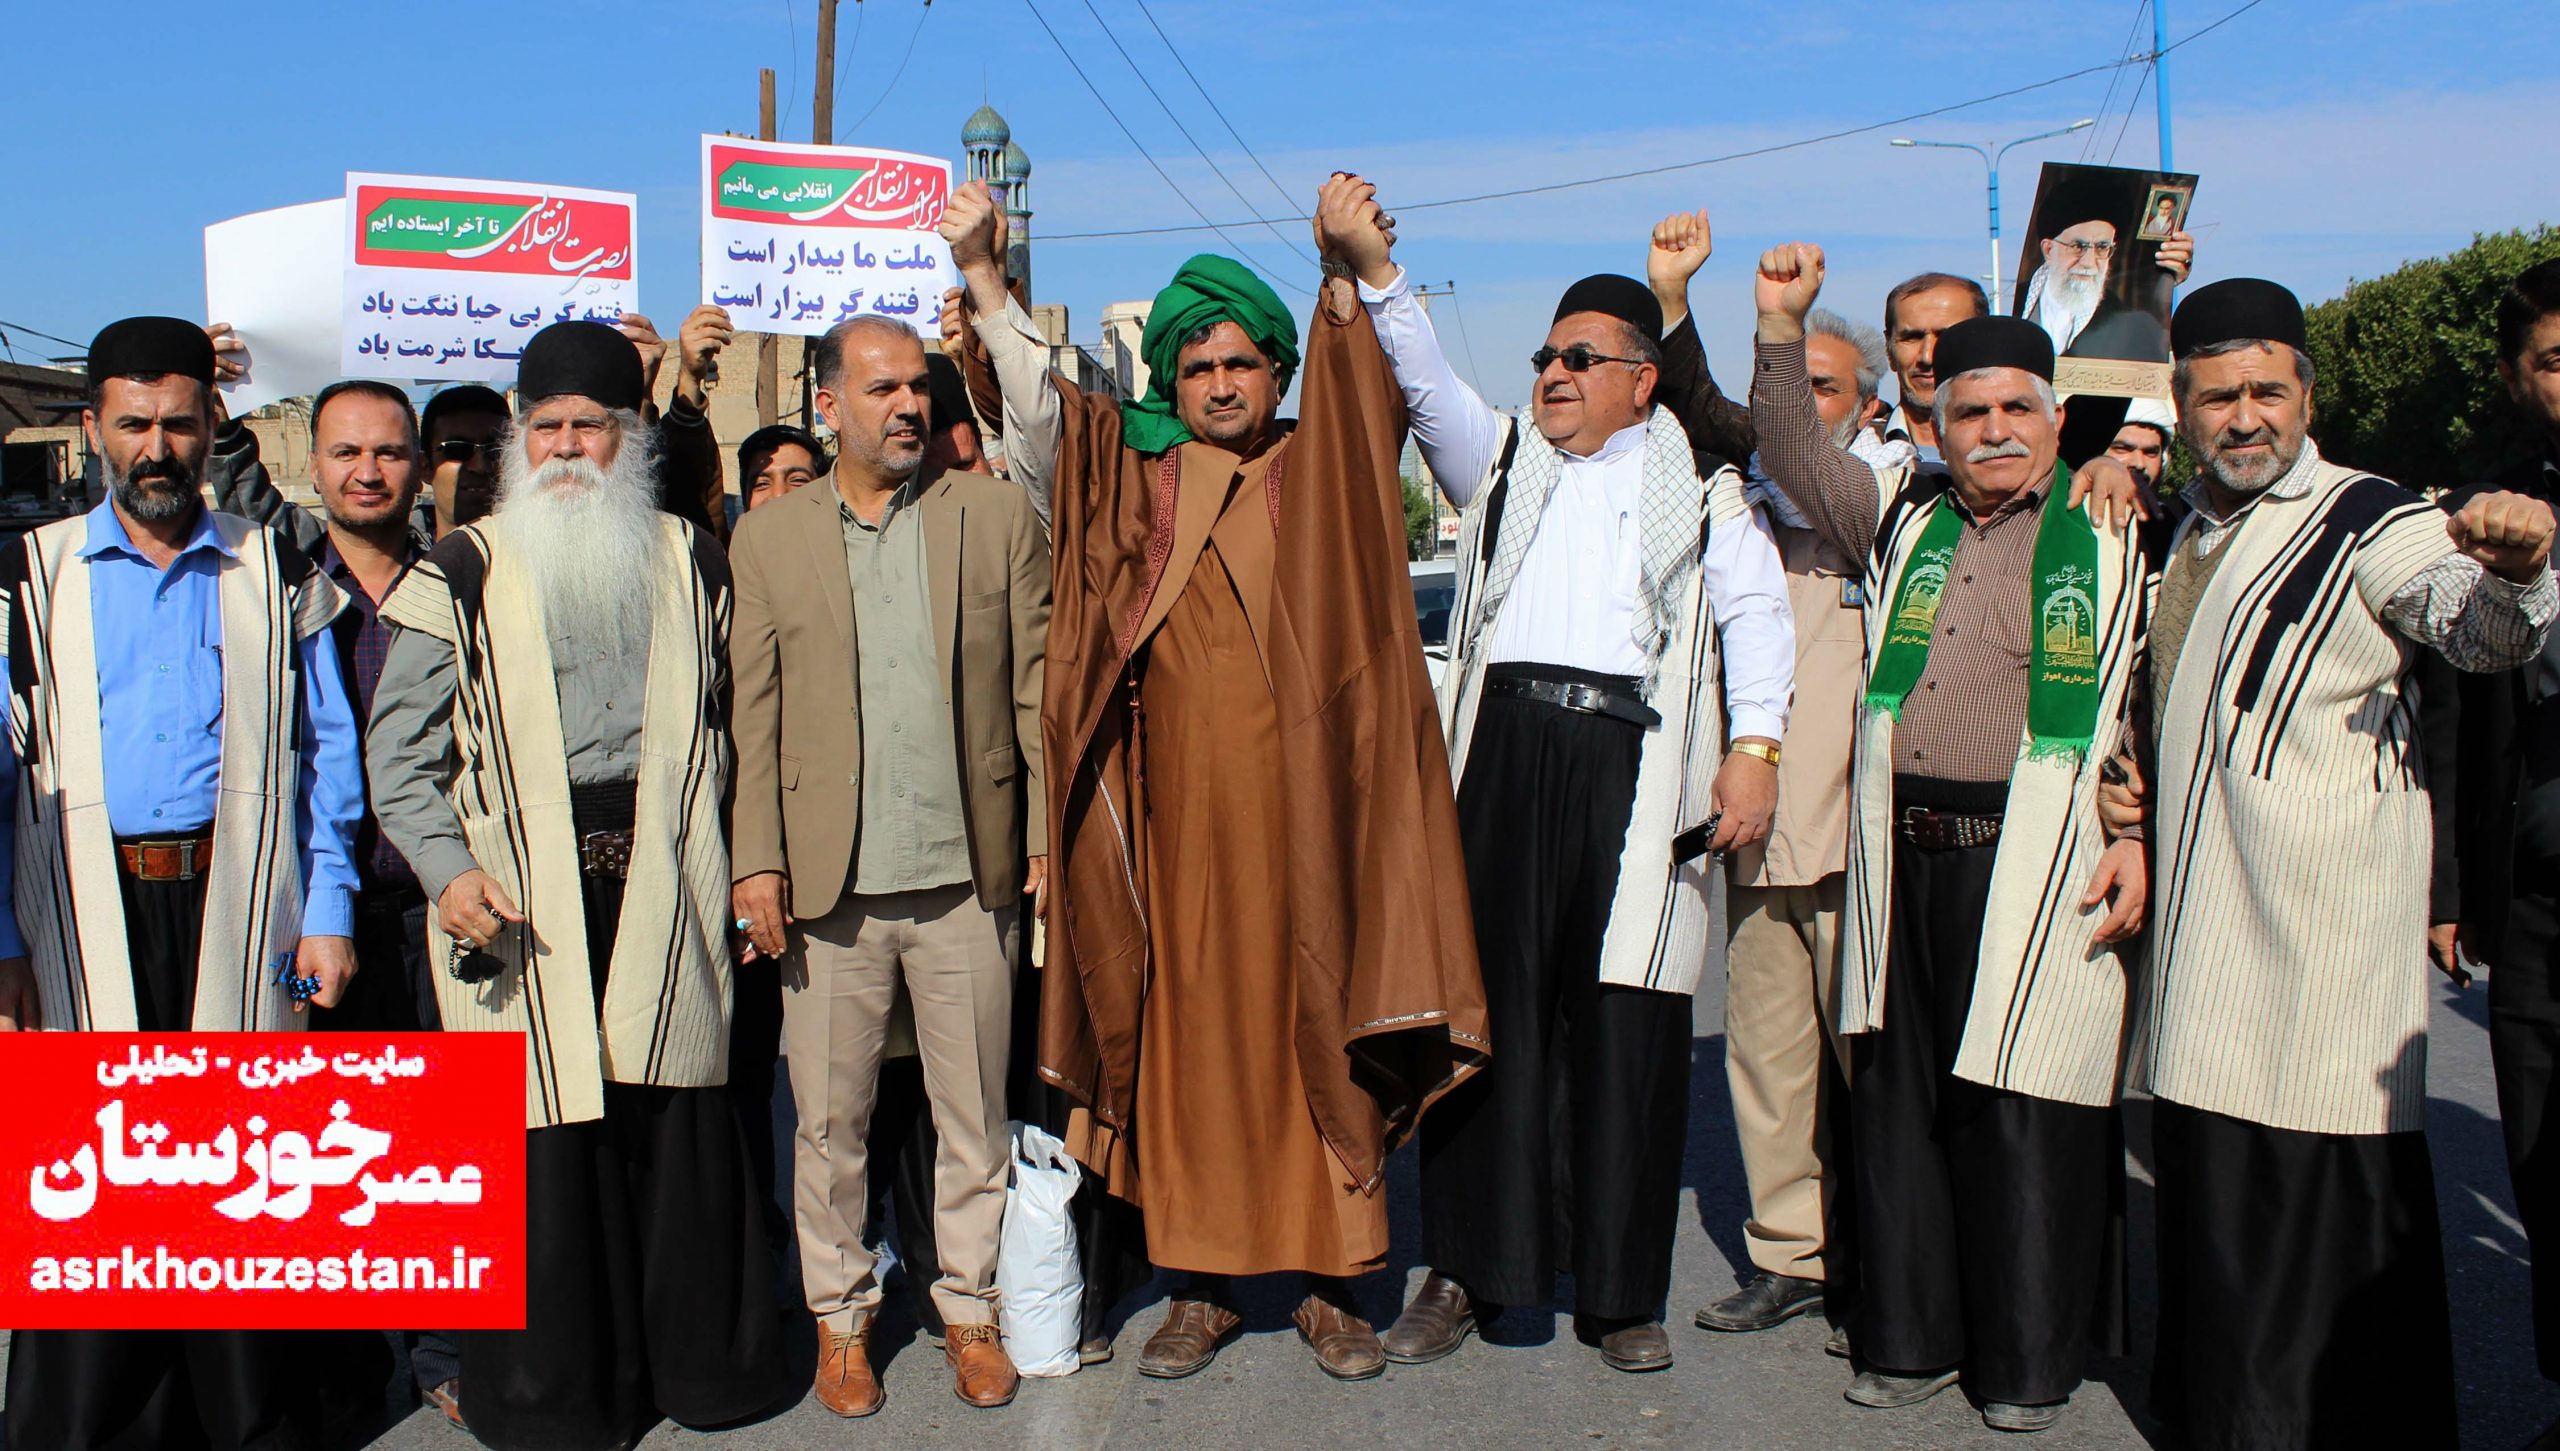 حضور پرشور مردم اهواز در راهپیمایی حمایت از اقتدار کشور به روایت تصویر